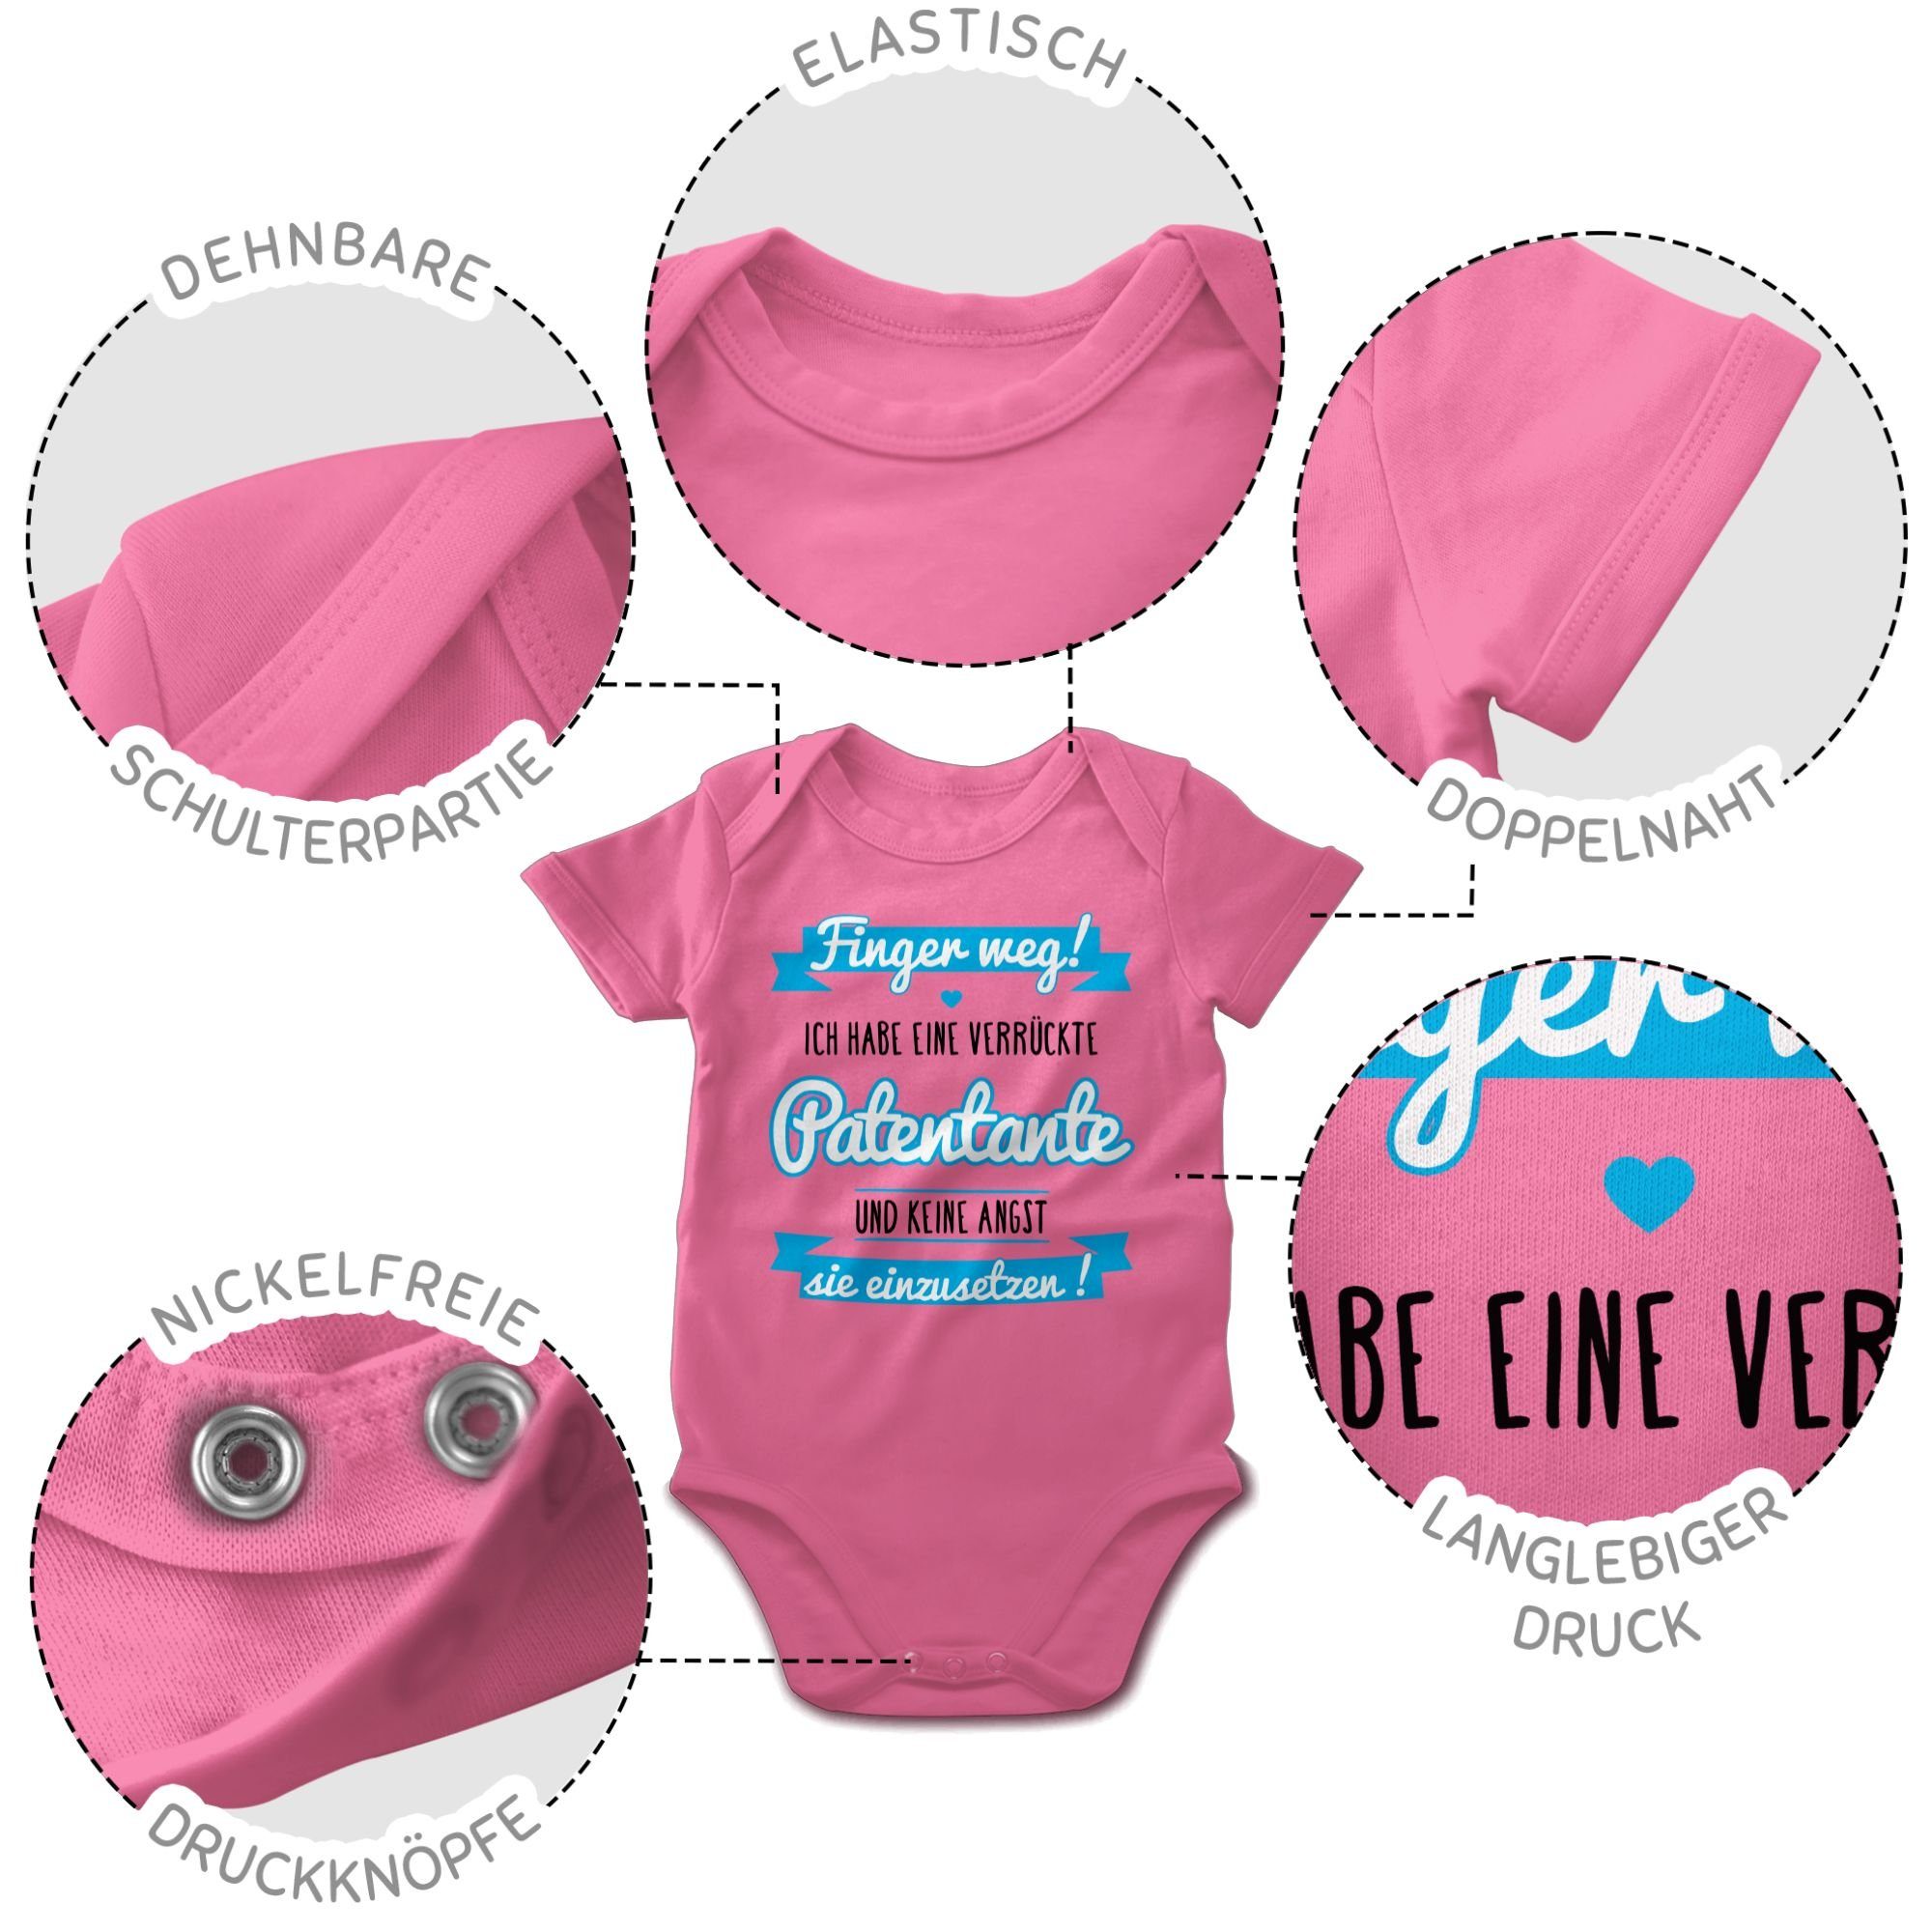 1 Patentante Shirtbody - Patentante Shirtracer eine habe blau/schwarz verrückte Ich Pink Baby